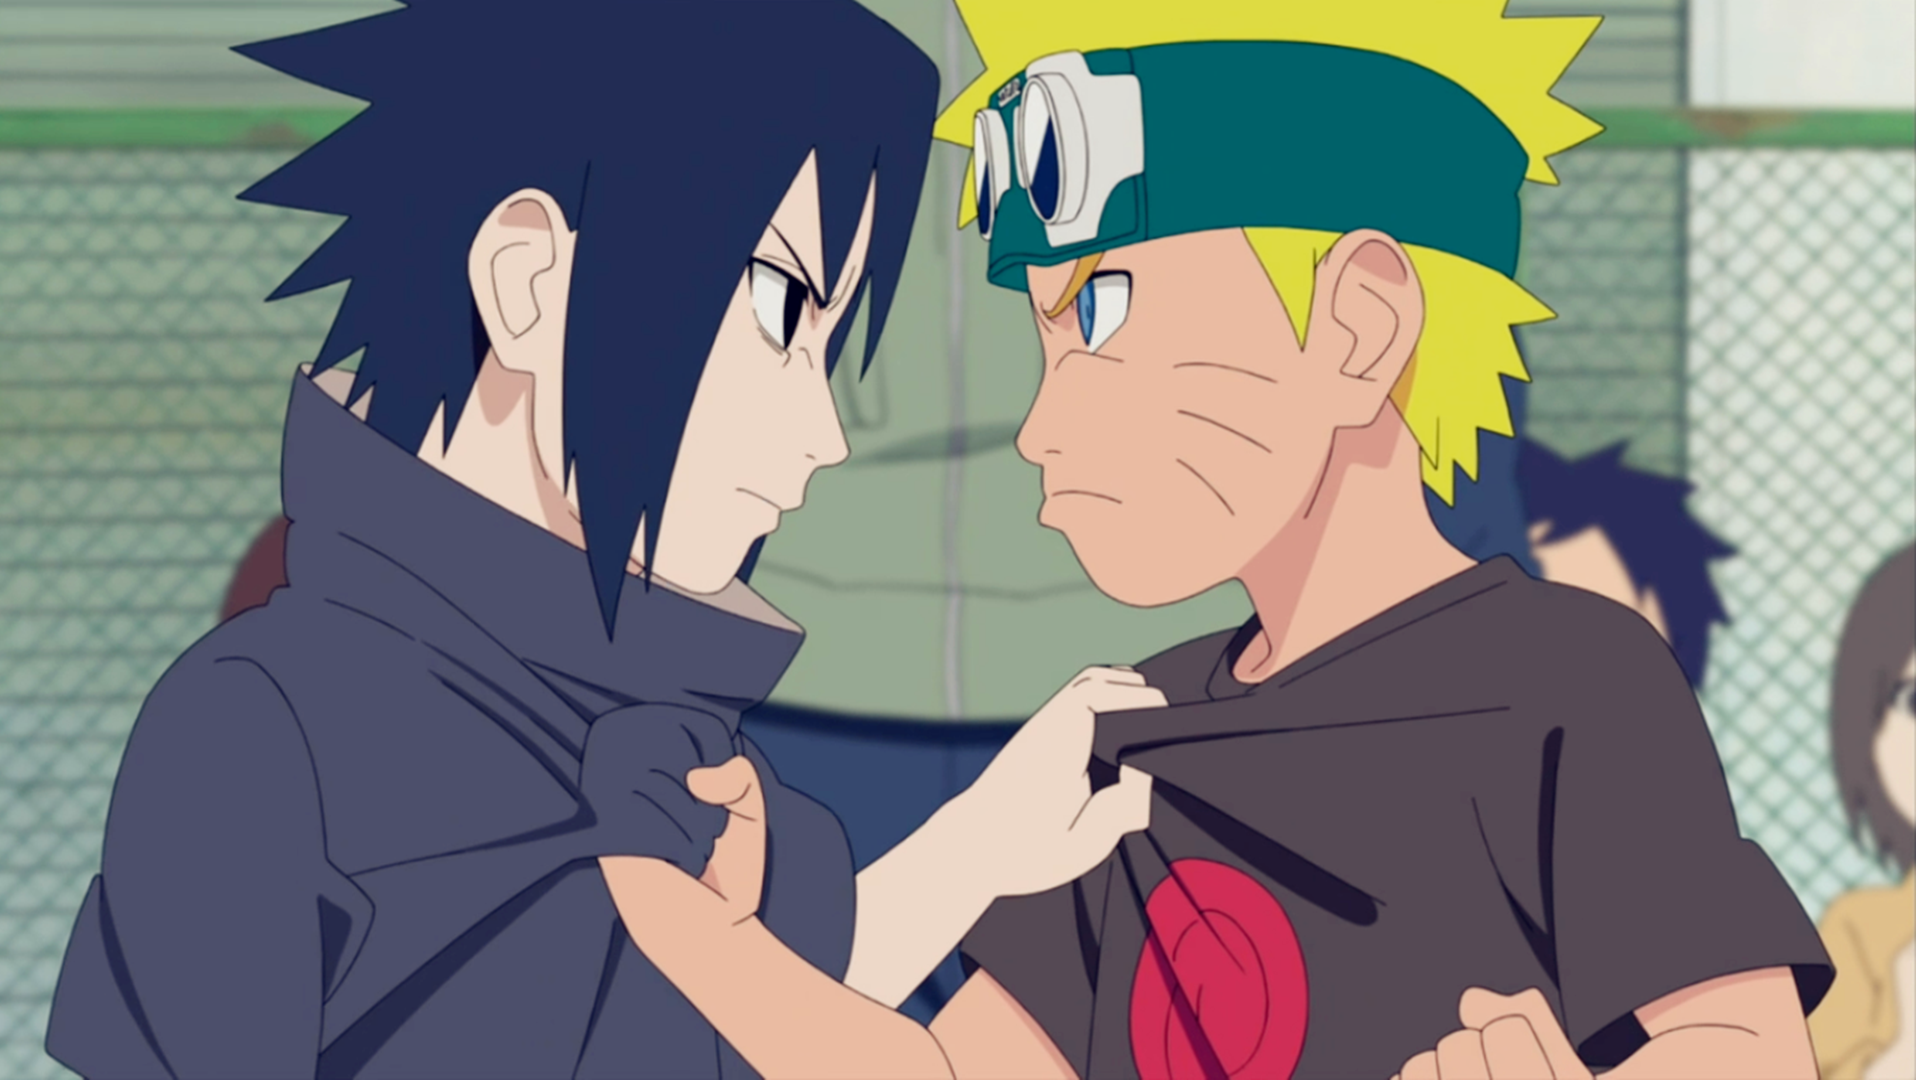 Pai deu o nome de Naruto a filho: Próximo vai se chamar Sasuke